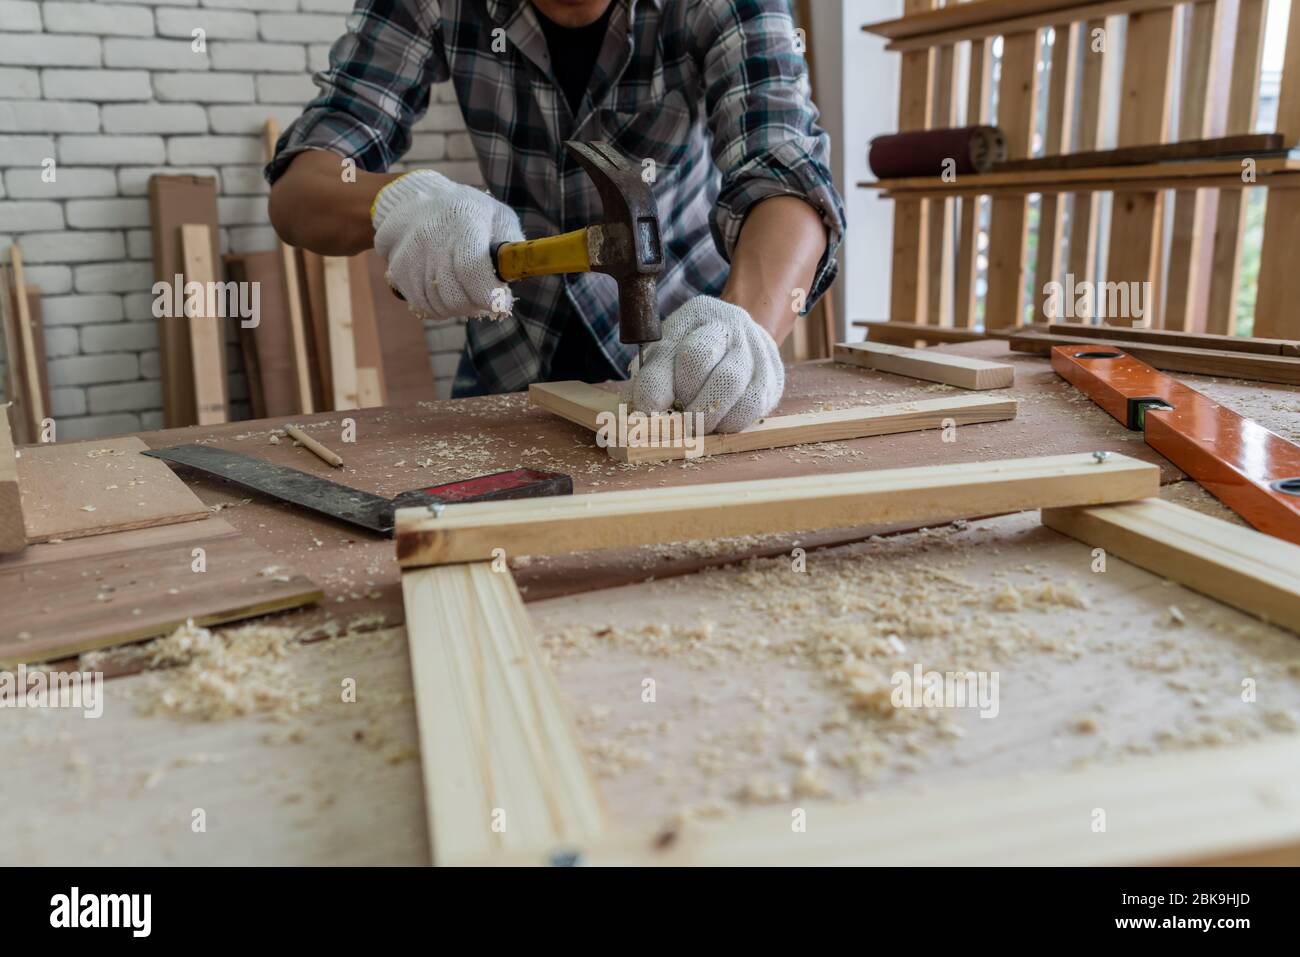 Tischler, der in der Werkstatt für Holzhandwerk arbeitet, um Baumaterial oder Holzmöbel herzustellen. Der junge asiatische Zimmermann verwendet professionelle Werkzeuge für Stockfoto